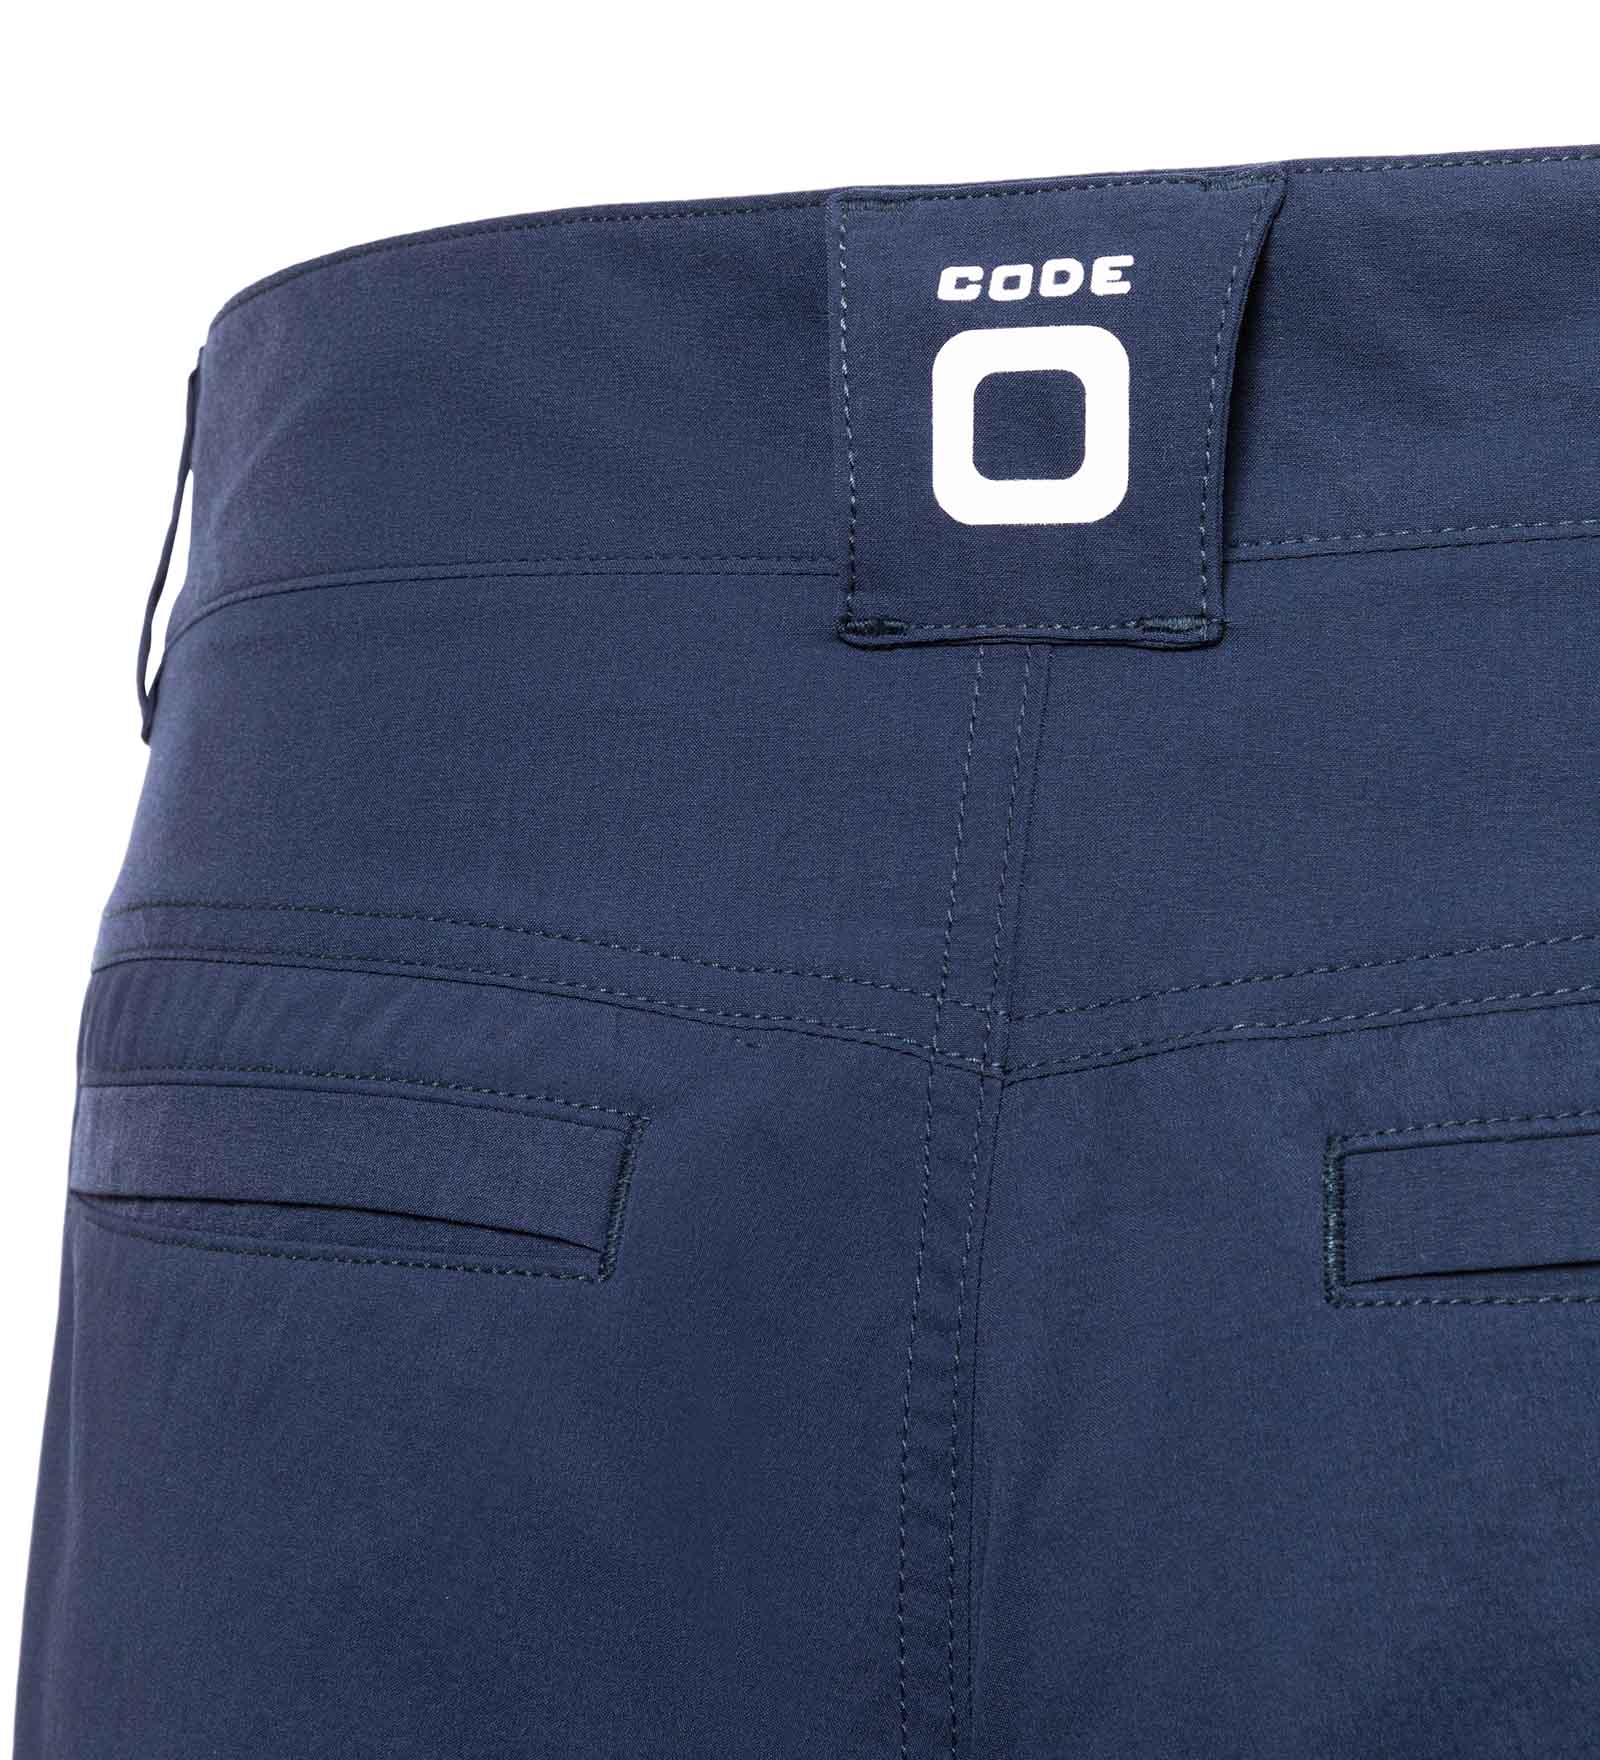 Club Shorts Navy CODE-ZERO 3XL | CODE-ZERO Blue Men